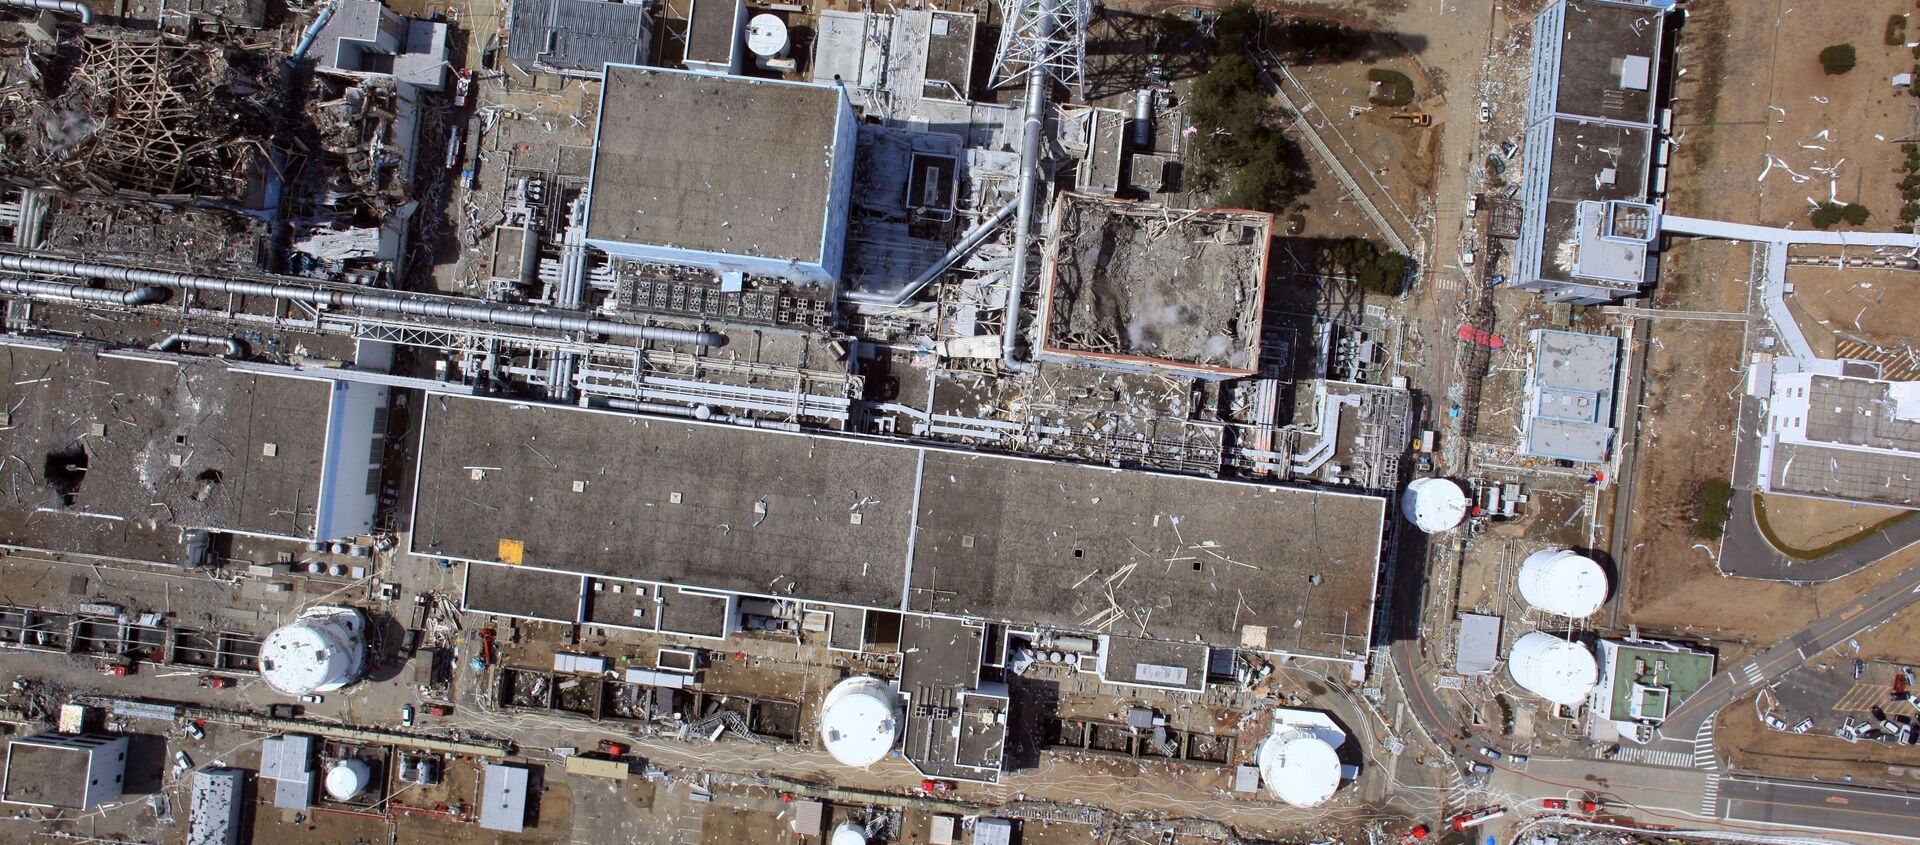 Вид сверху на разрушенную АЭС Фукусима-1 - Sputnik 日本, 1920, 08.03.2021